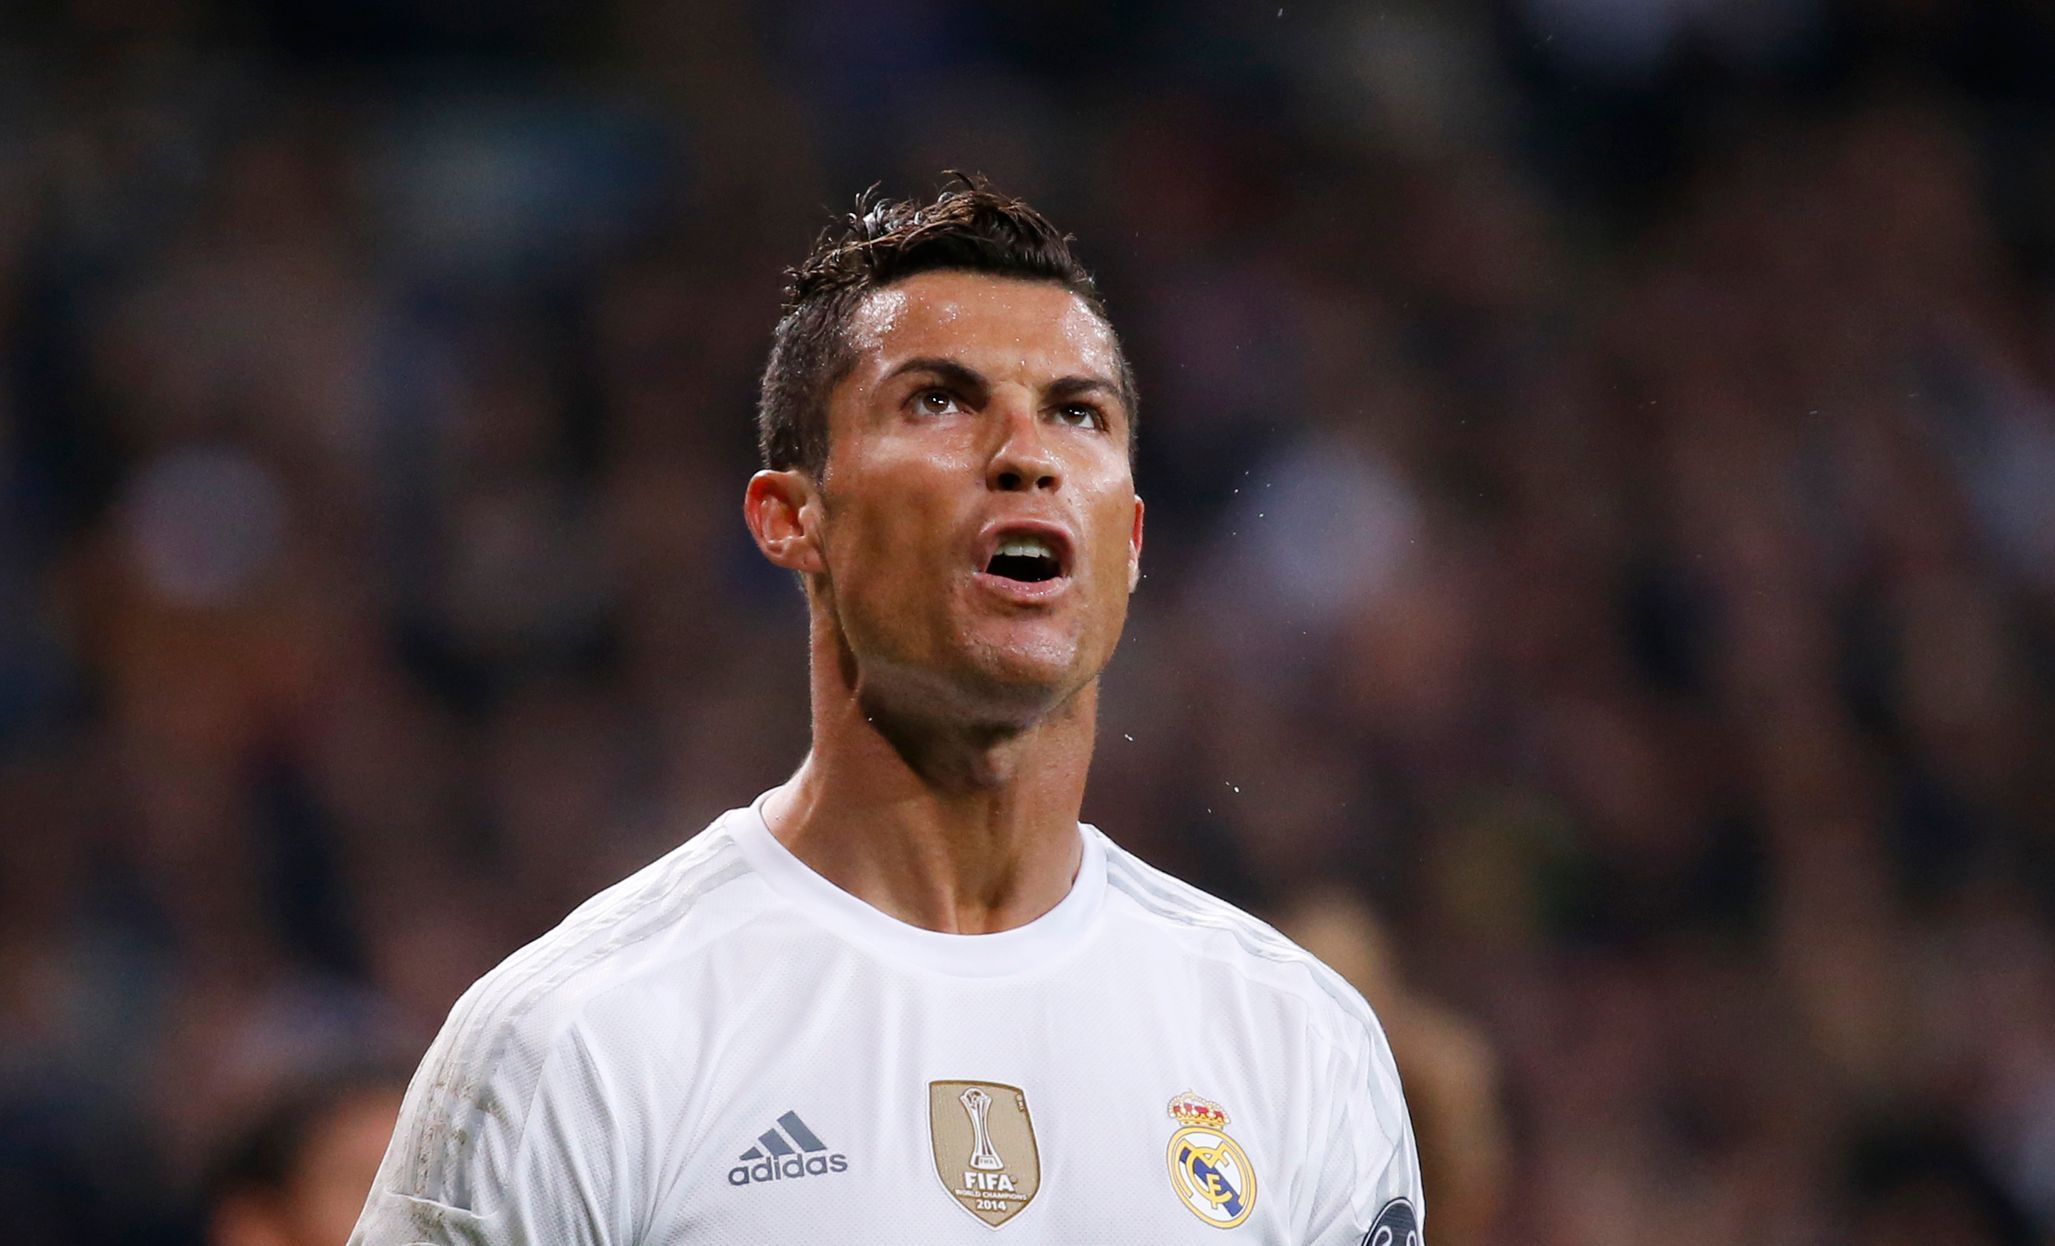 Ronaldo nedal penaltu a Real v Málaze pouze remizoval